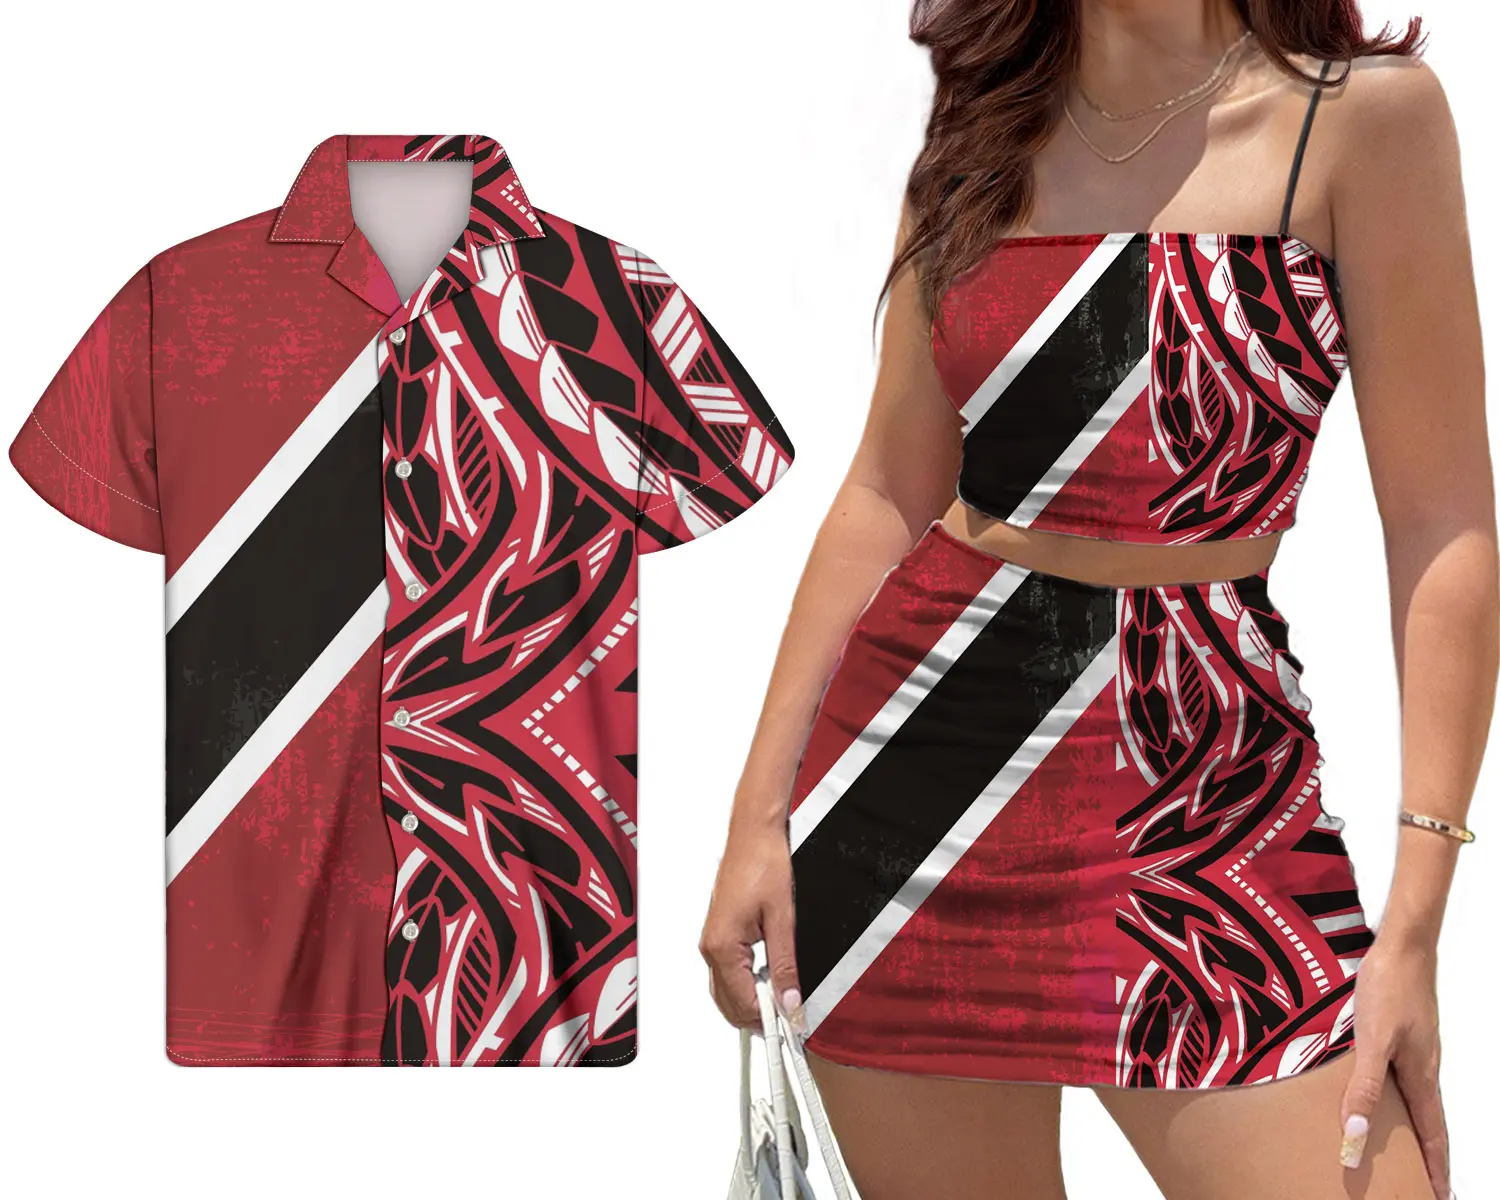 블랙 레드 부족 폴리네시아 트리니다드 토바고 플래그 사용자 정의 인쇄 여성 섹시한 미니 스커트와 튜브 탑 경기 남성 셔츠 2Pcs 세트